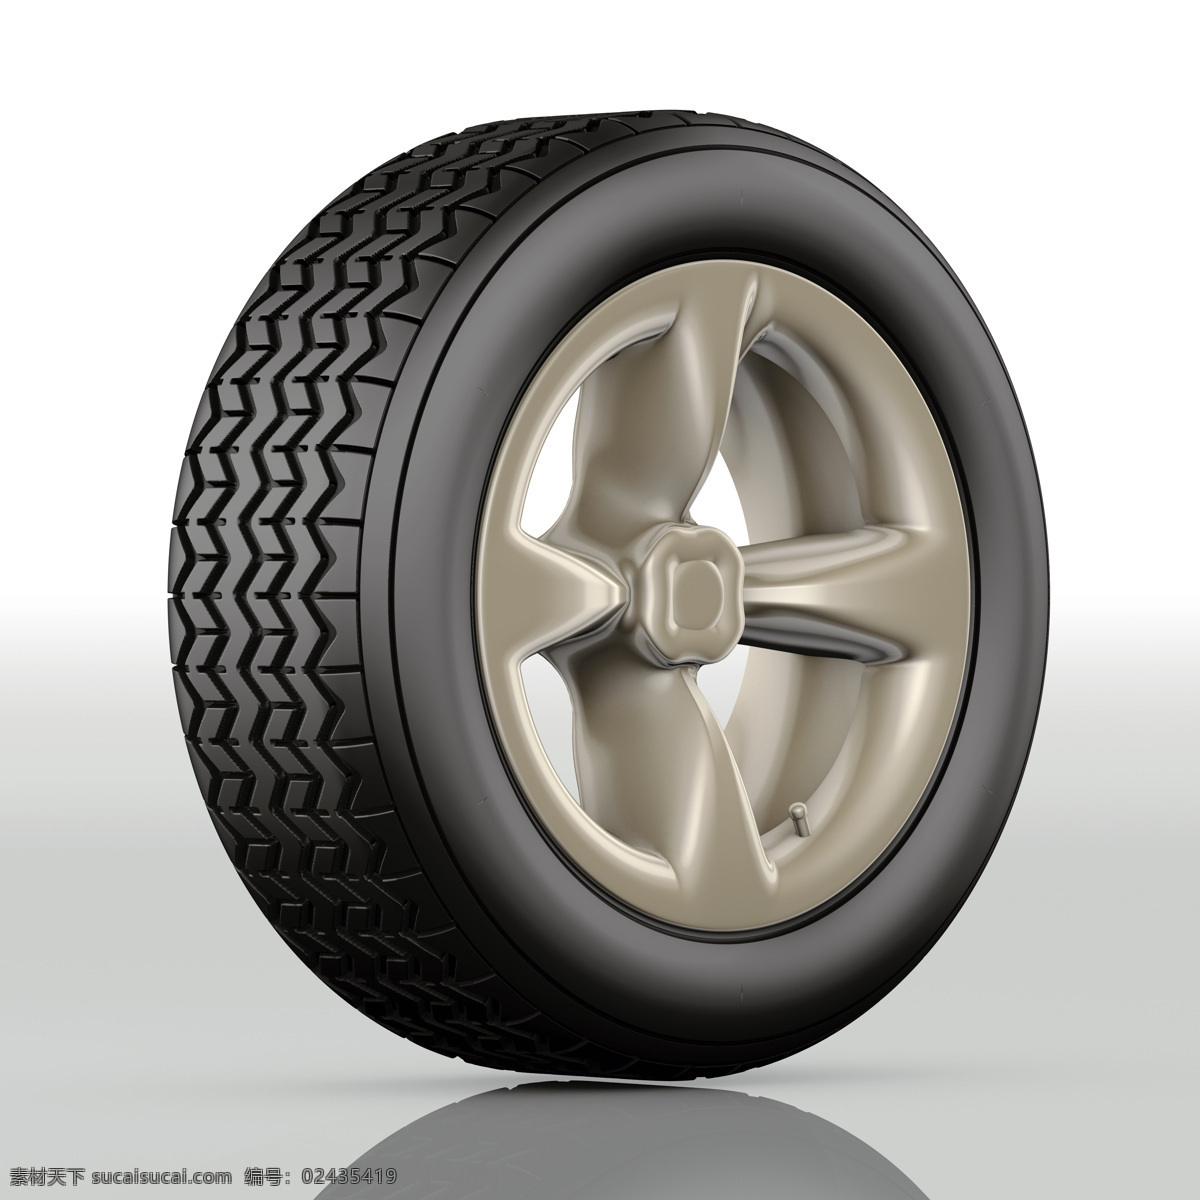 车轮子 轮胎 运输 货车 轮胎特写 汽车零件 配件 交通工具 现代科技 汽车图片